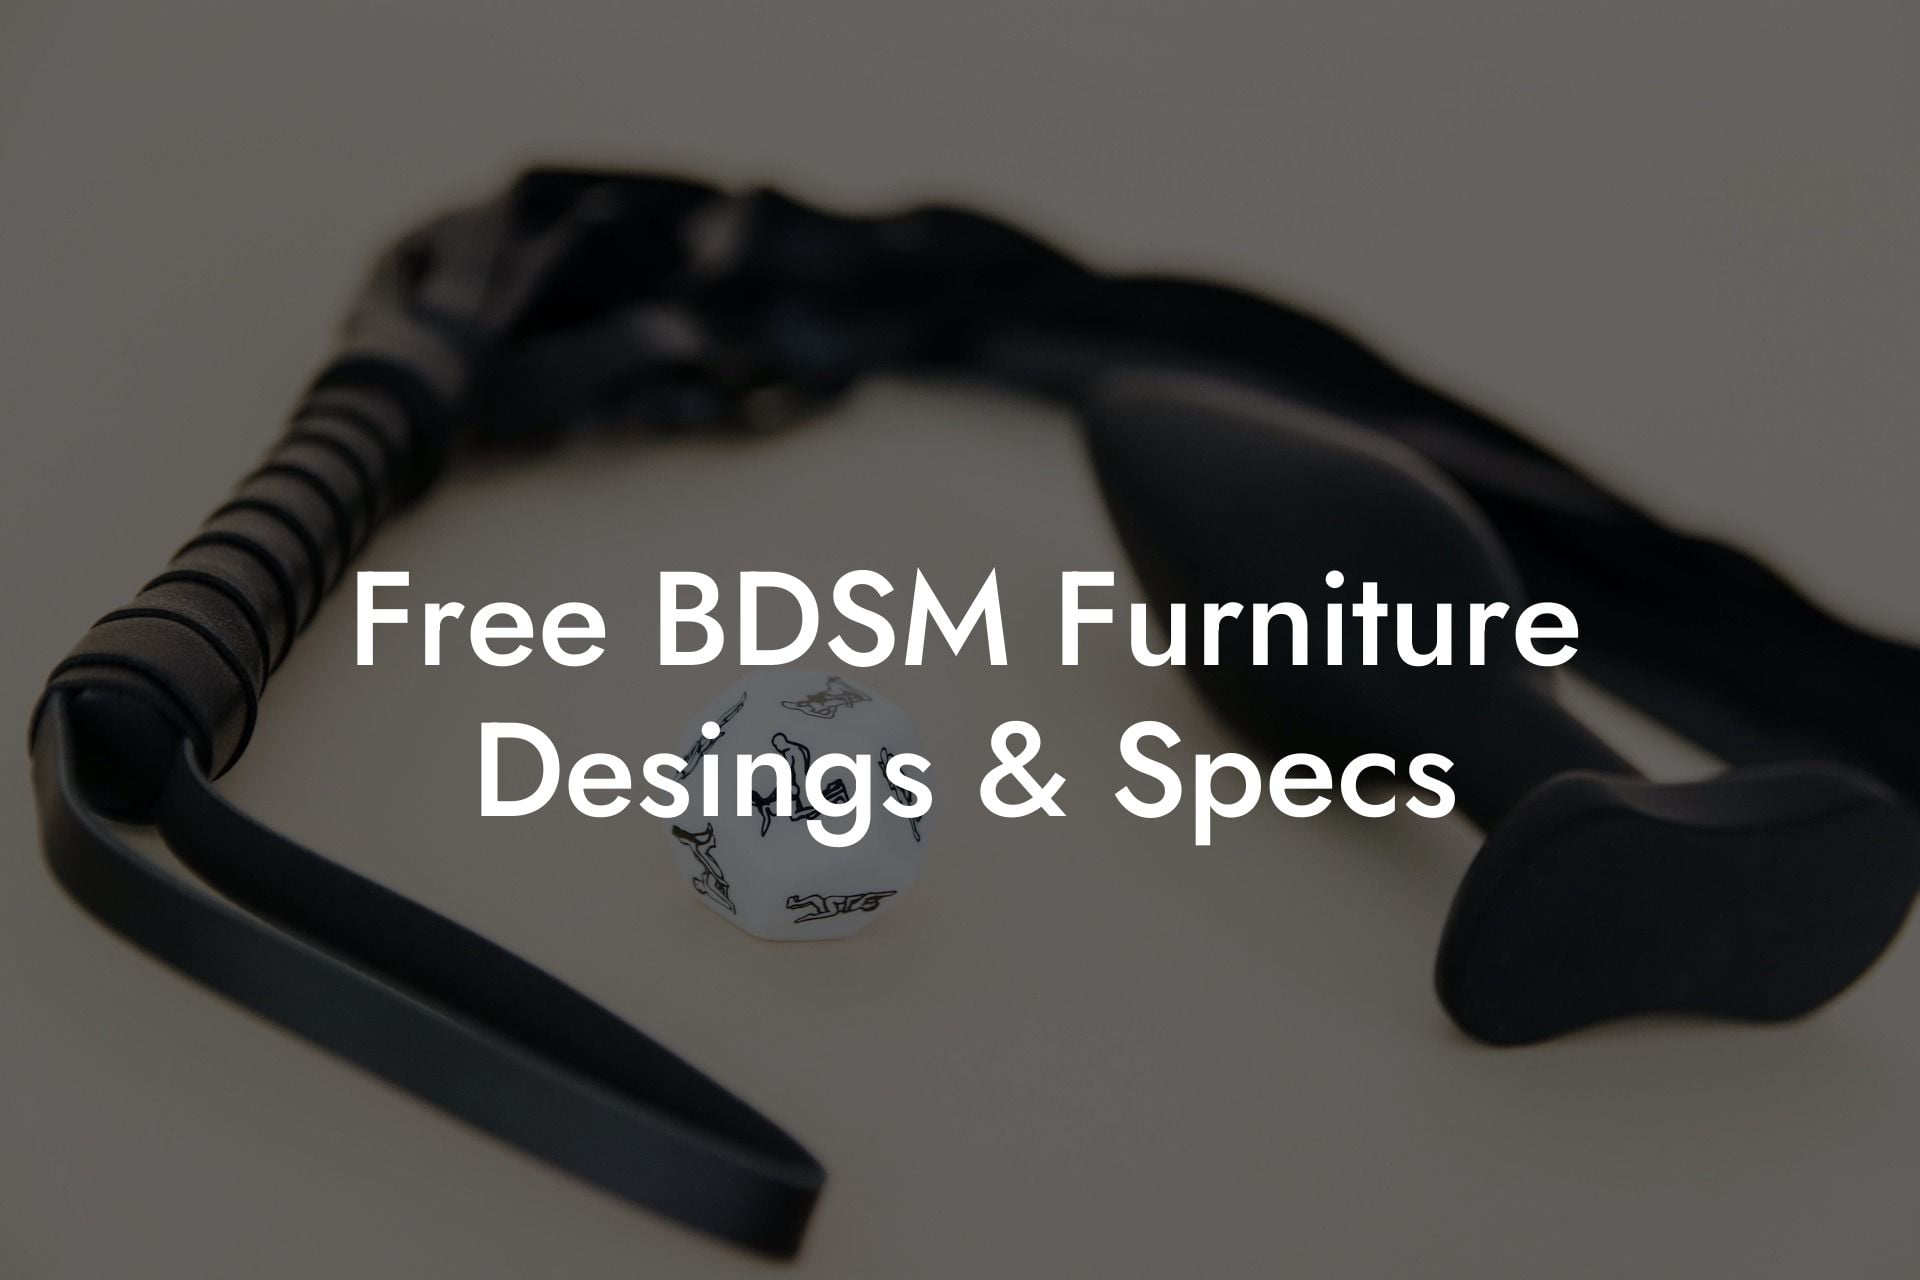 Free BDSM Furniture Desings & Specs